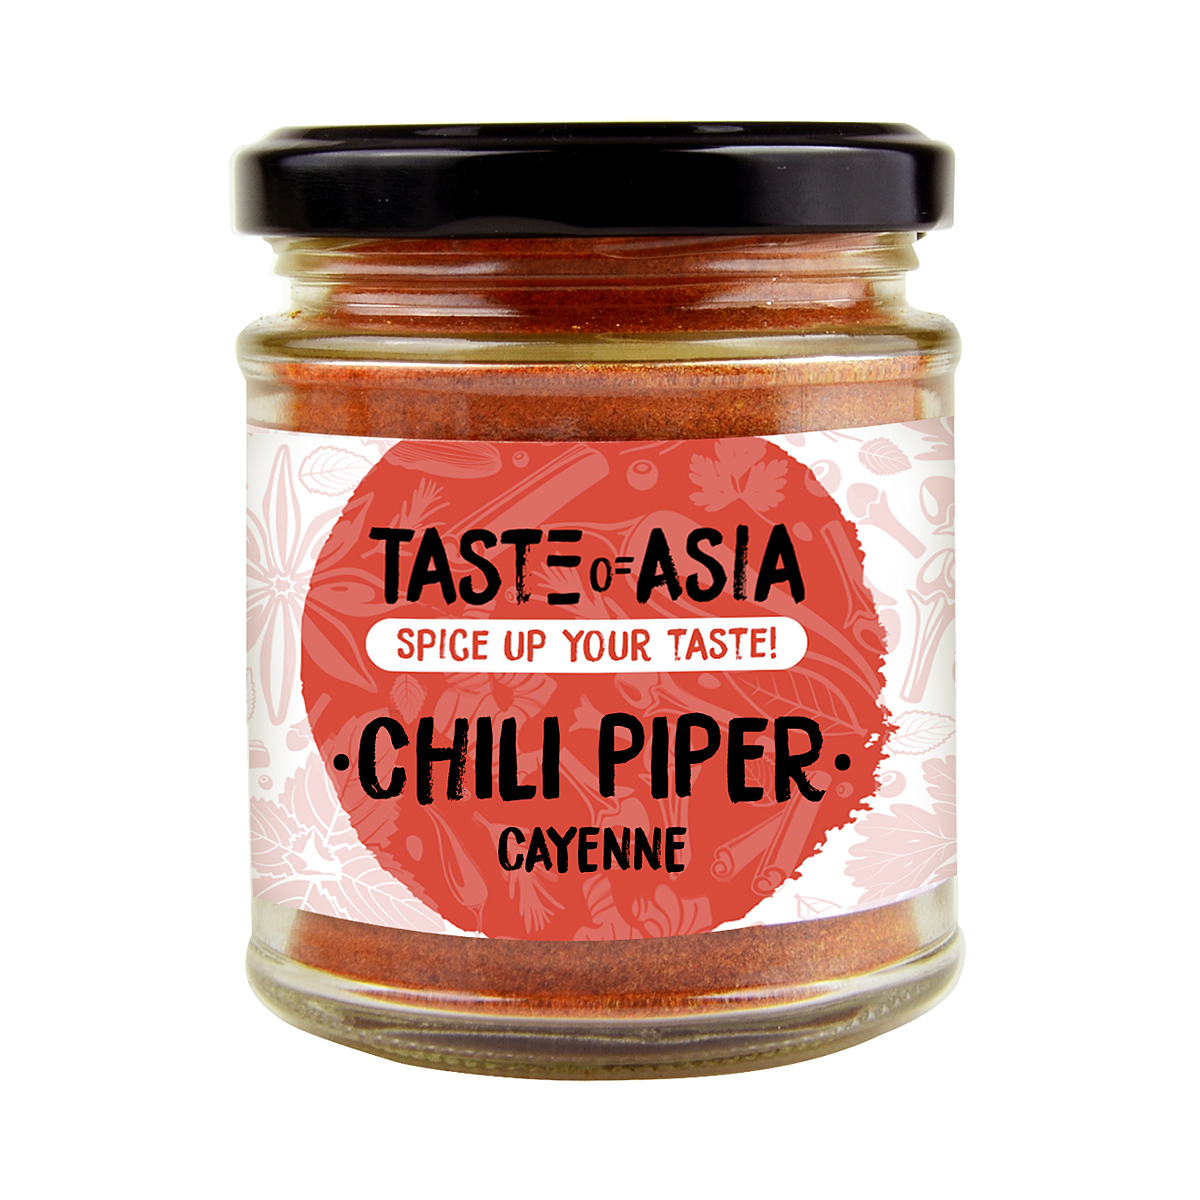 Private Label Taste of Asia - Chili Piper Cayenne TOA 70g, asianfood.ro